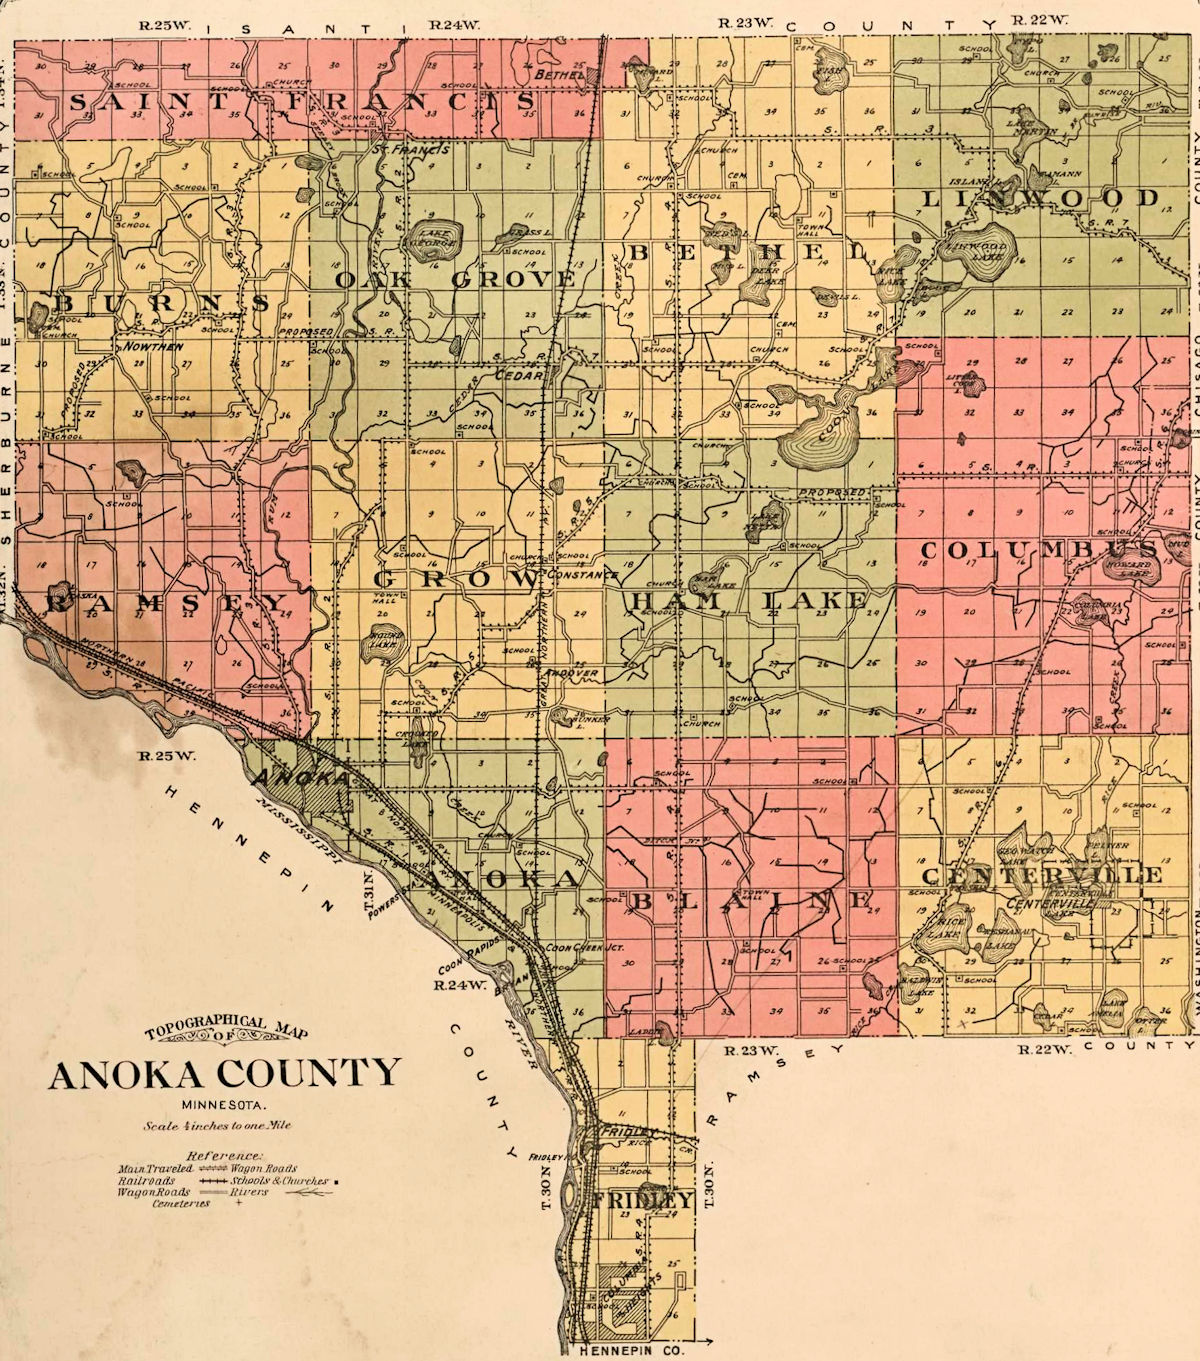 Anoka County Plat Map.